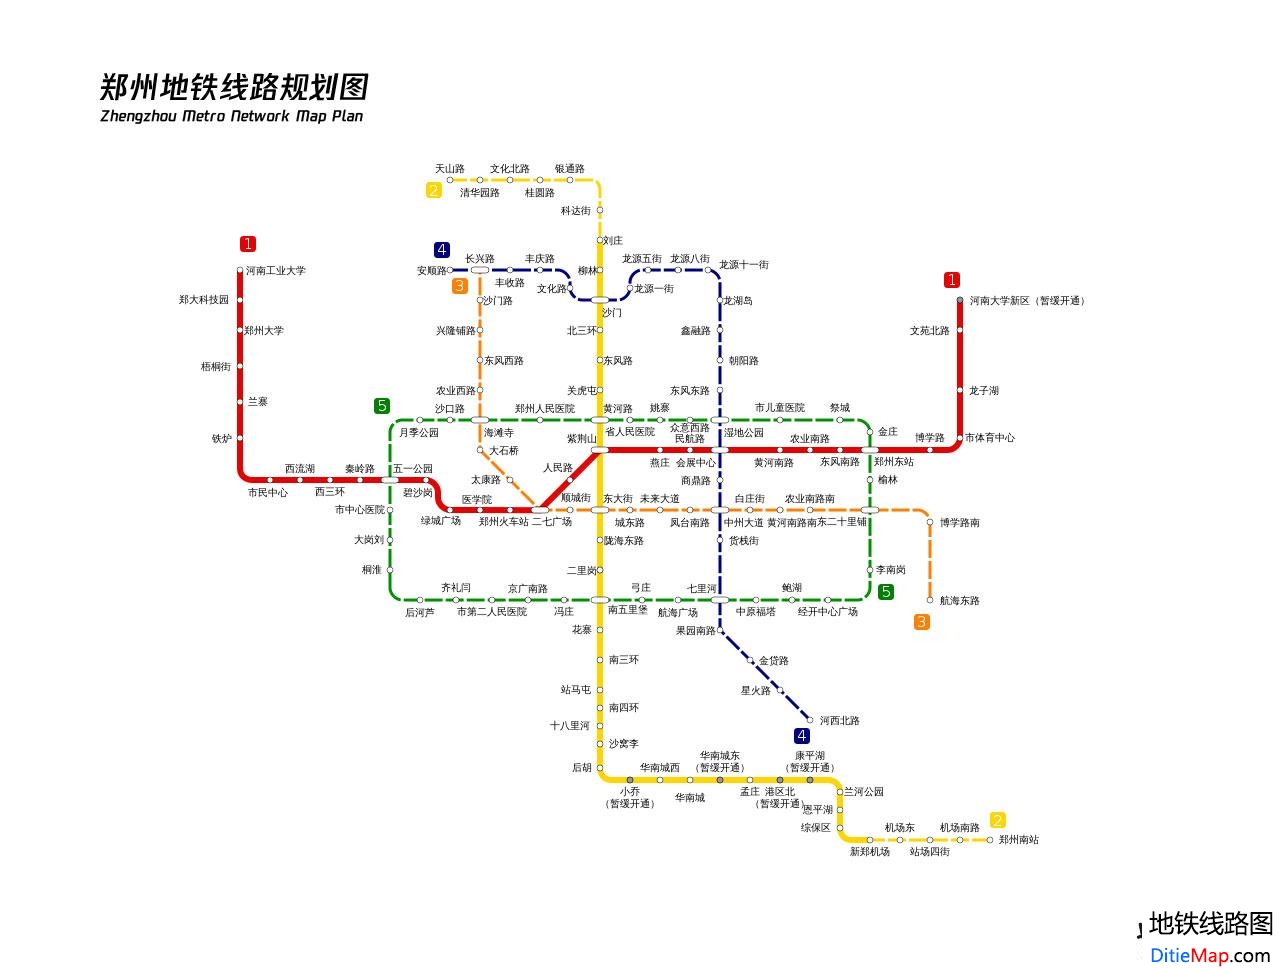 郑州地铁2号线延长线12月28日开通试运营